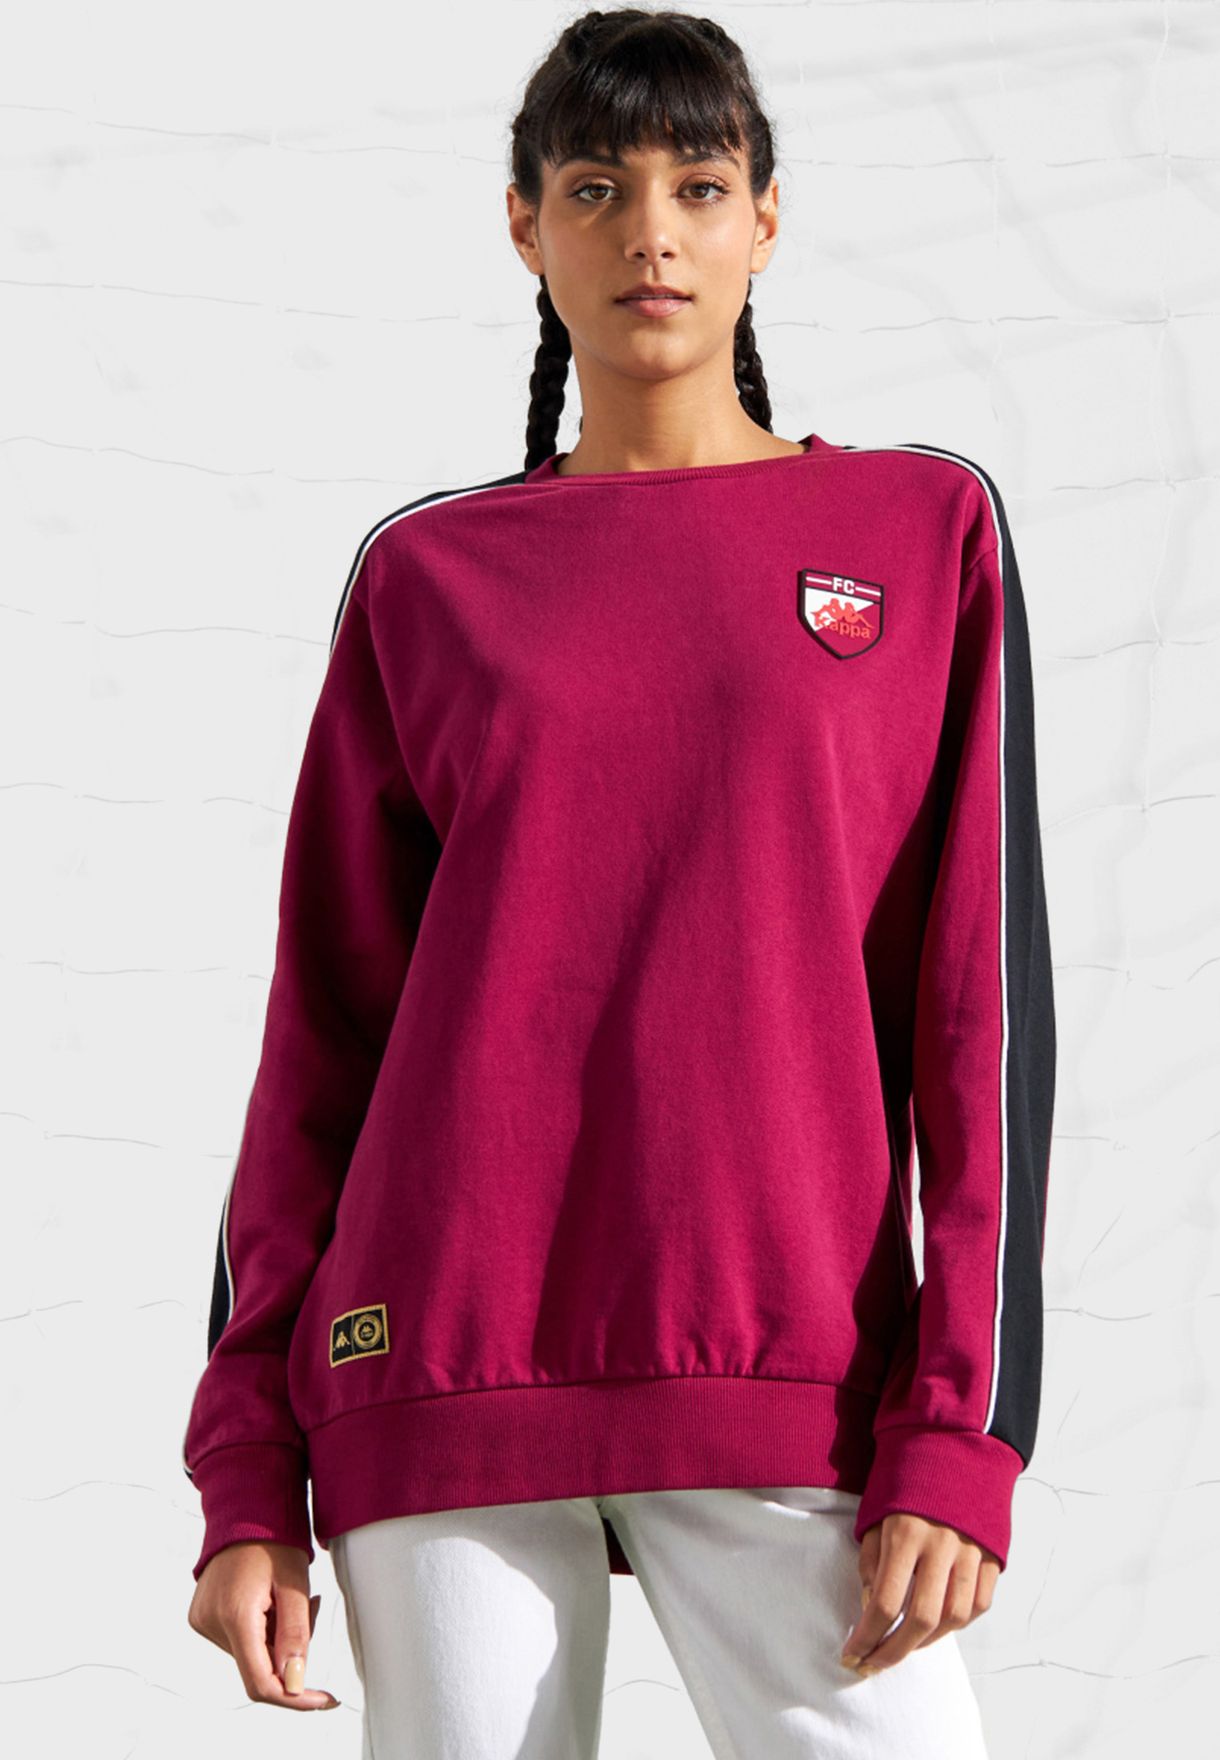 Qatar Sweatshirt